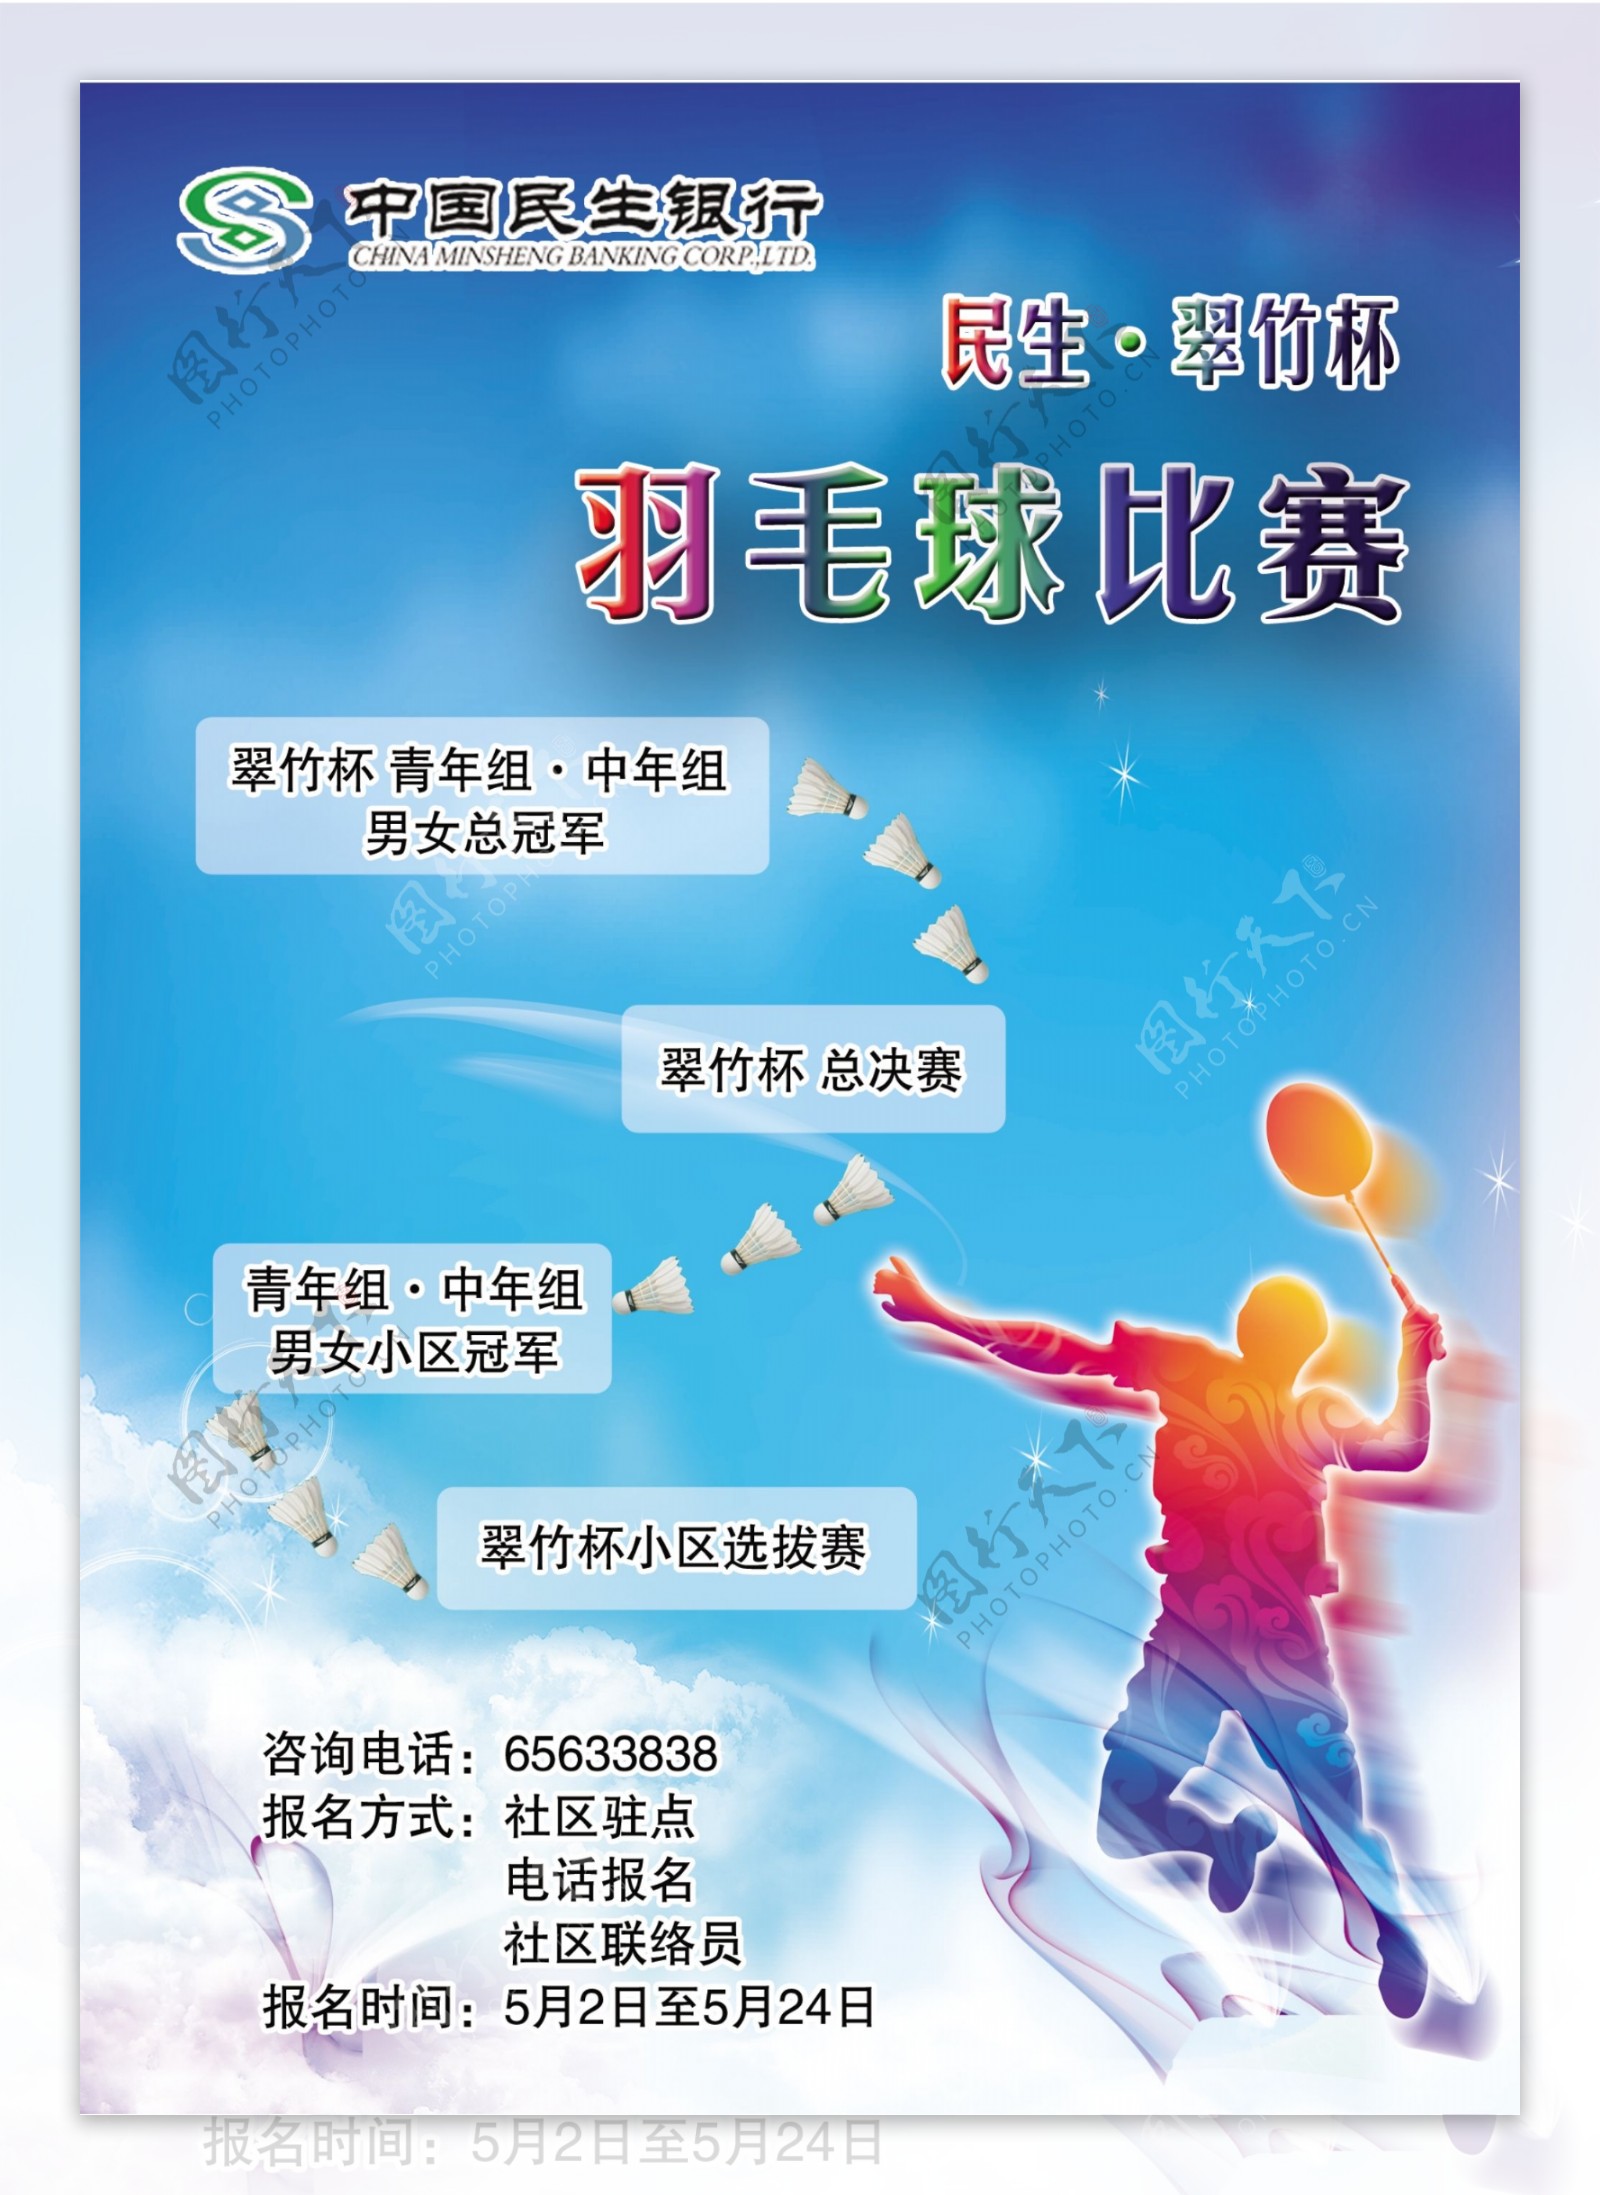 民生银行羽毛球赛海报图片